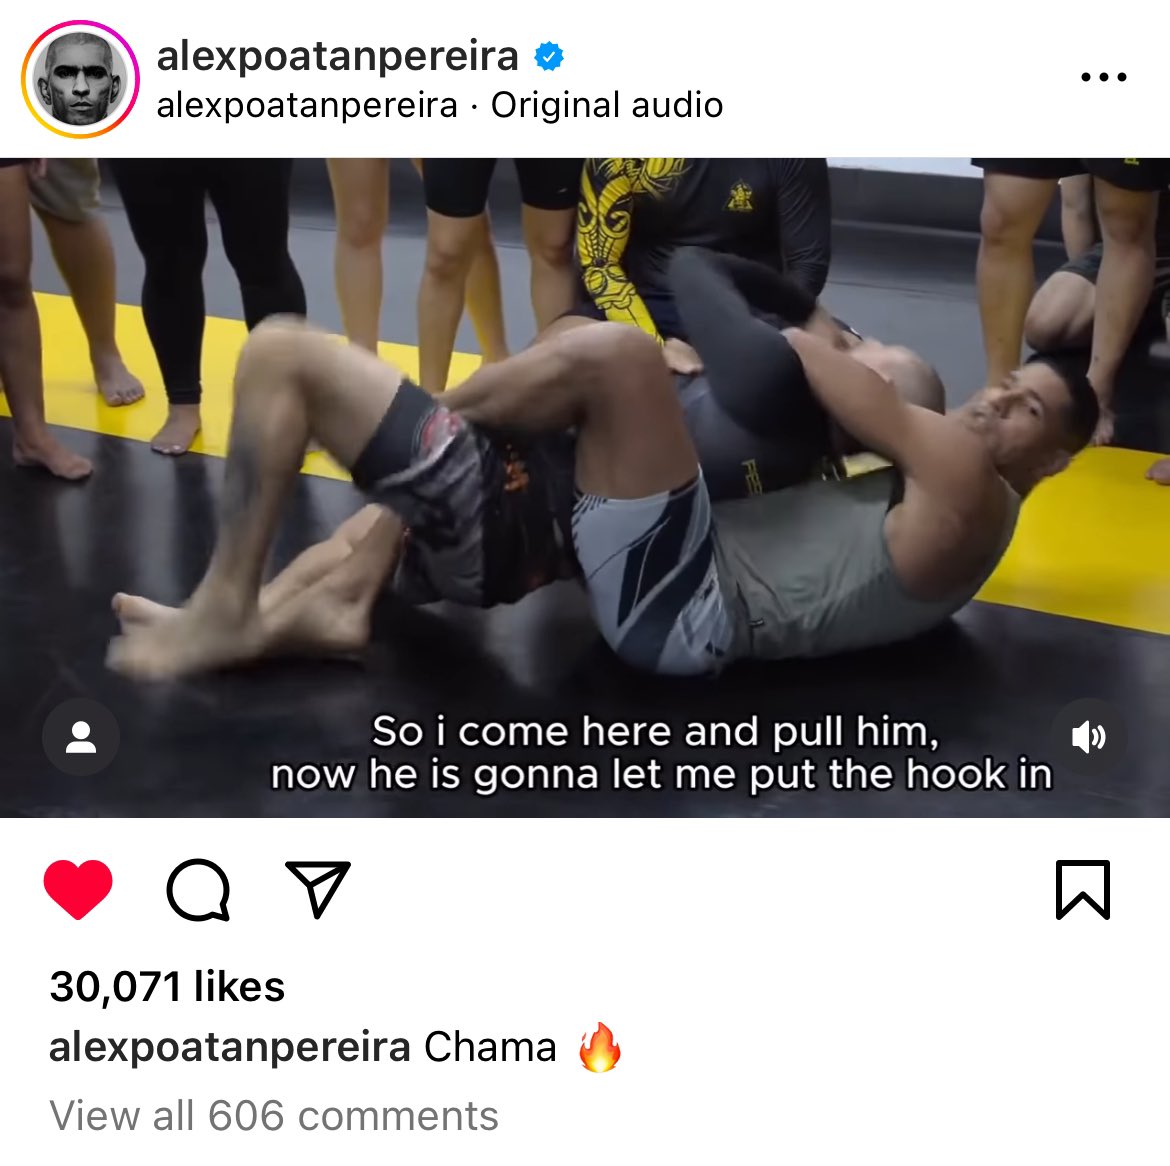 never thought I’d see alex pereira teaching jiu jitsu